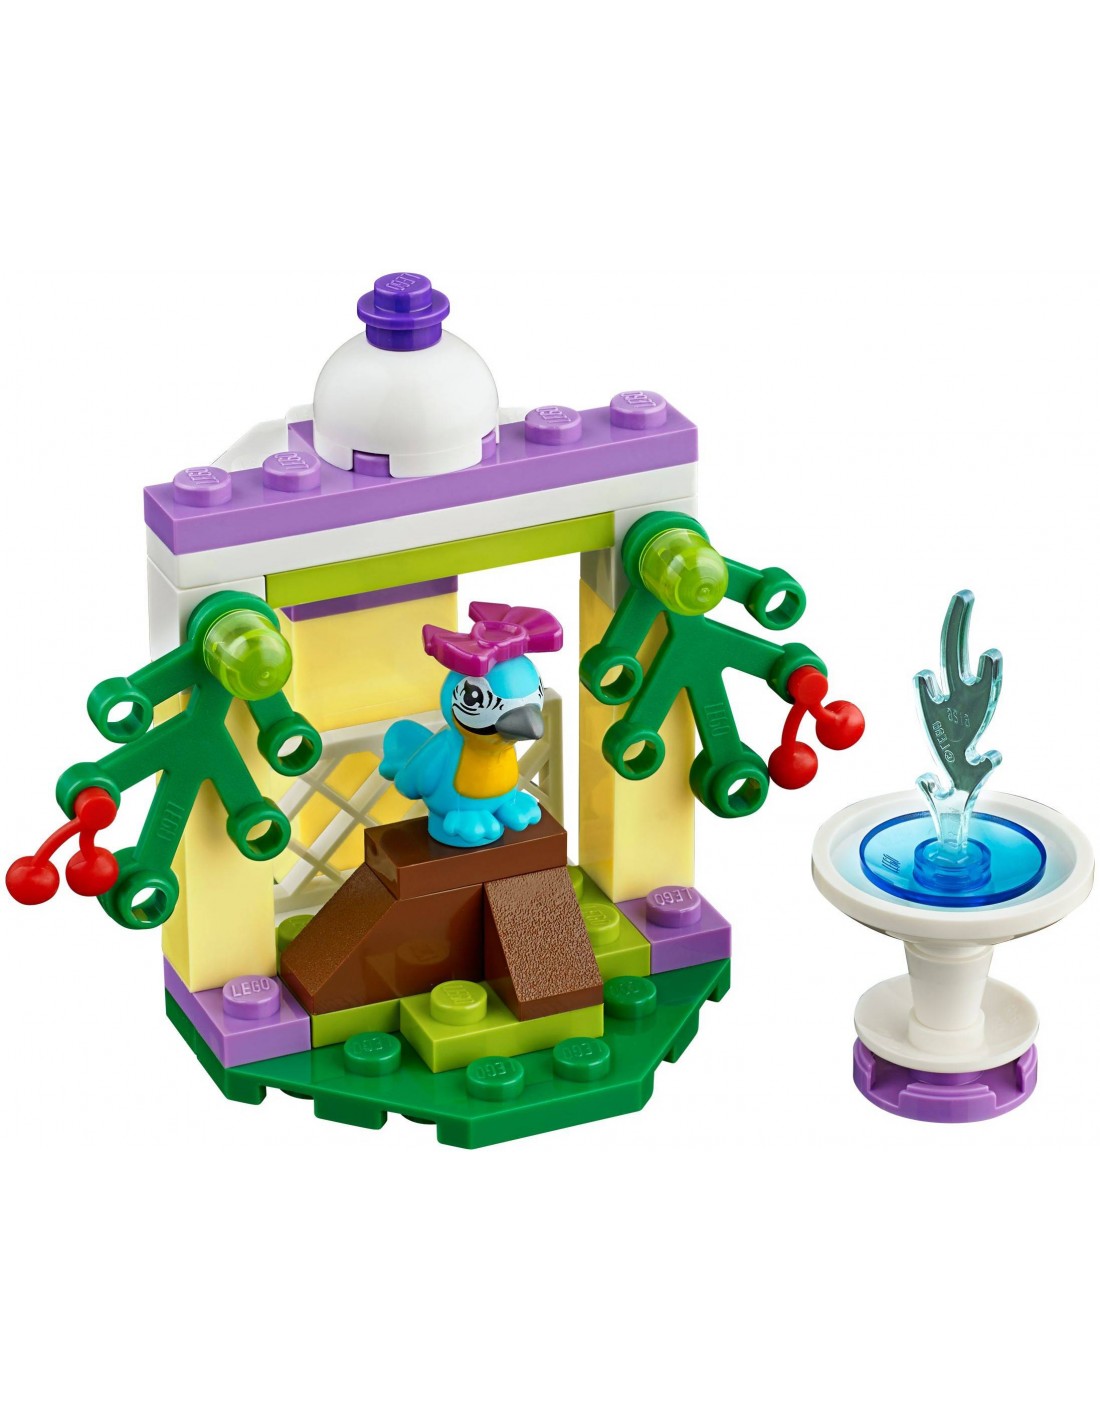 LEGO Friends - Le Perroquet et Sa Fontaine - 41044 - En stock chez